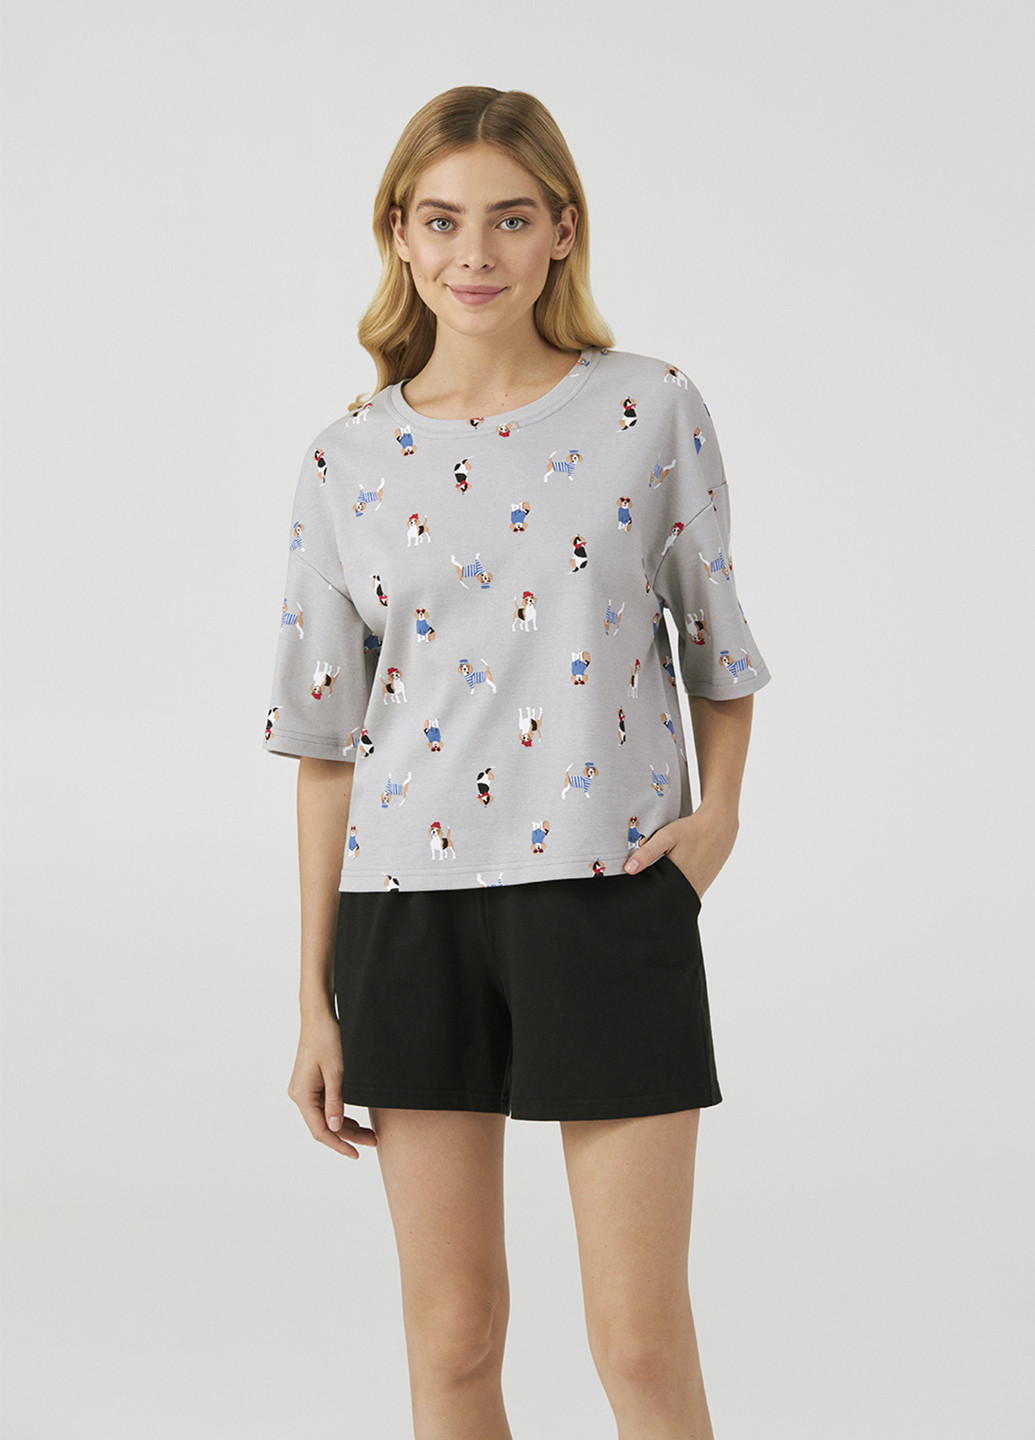 Комбинированная всесезон пижама (футболка, шорты) футболка + шорты Ellen